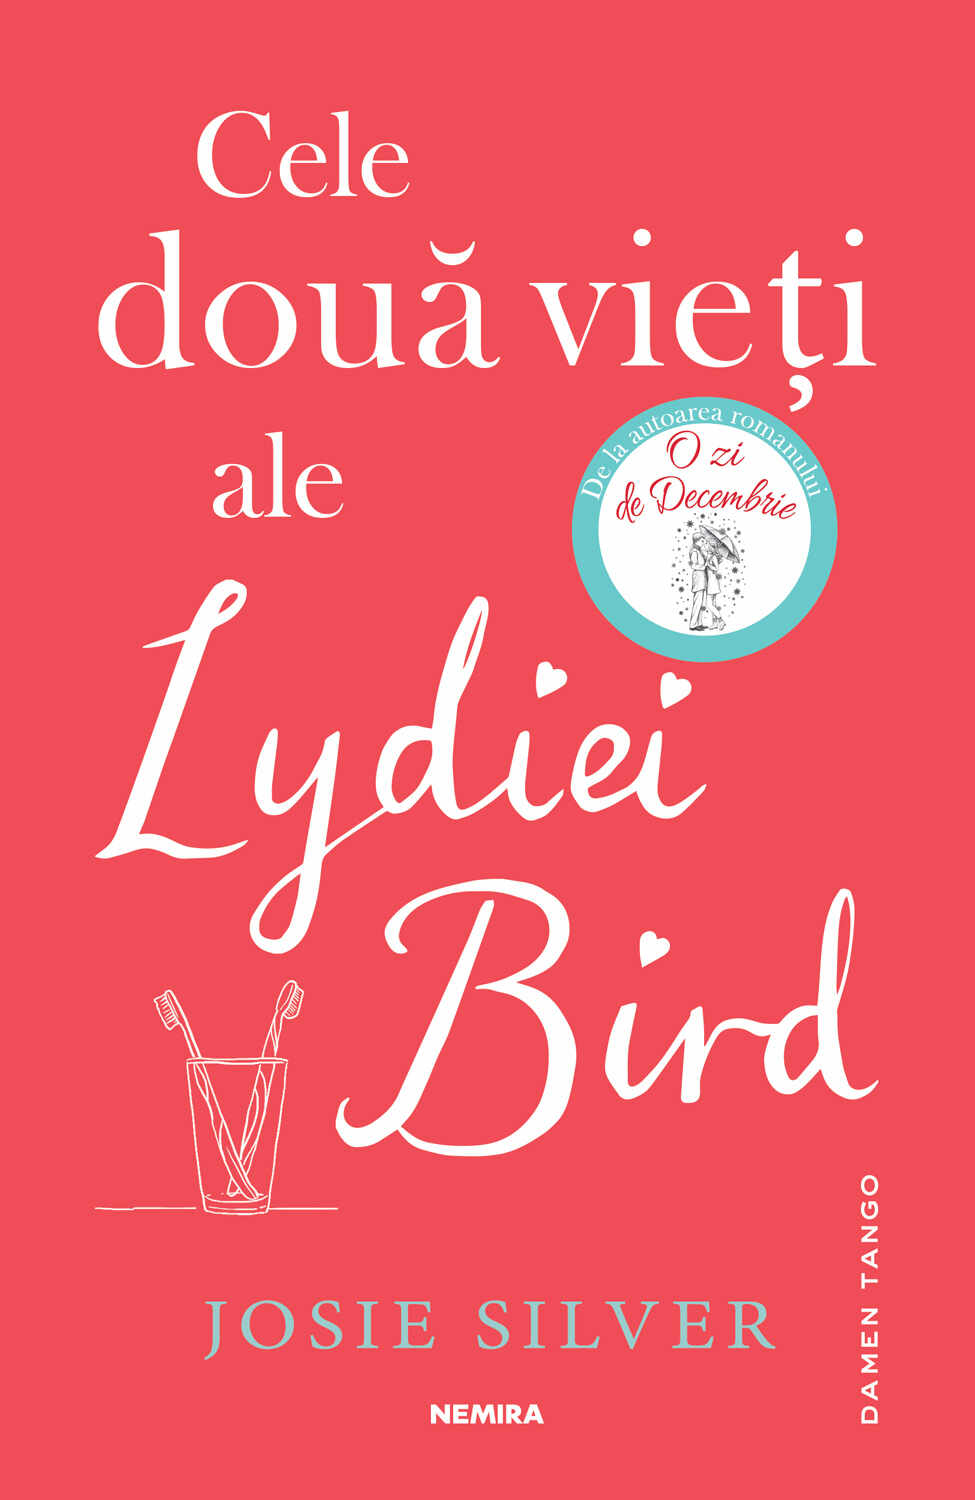 Cele două vieți ale Lydiei Bird